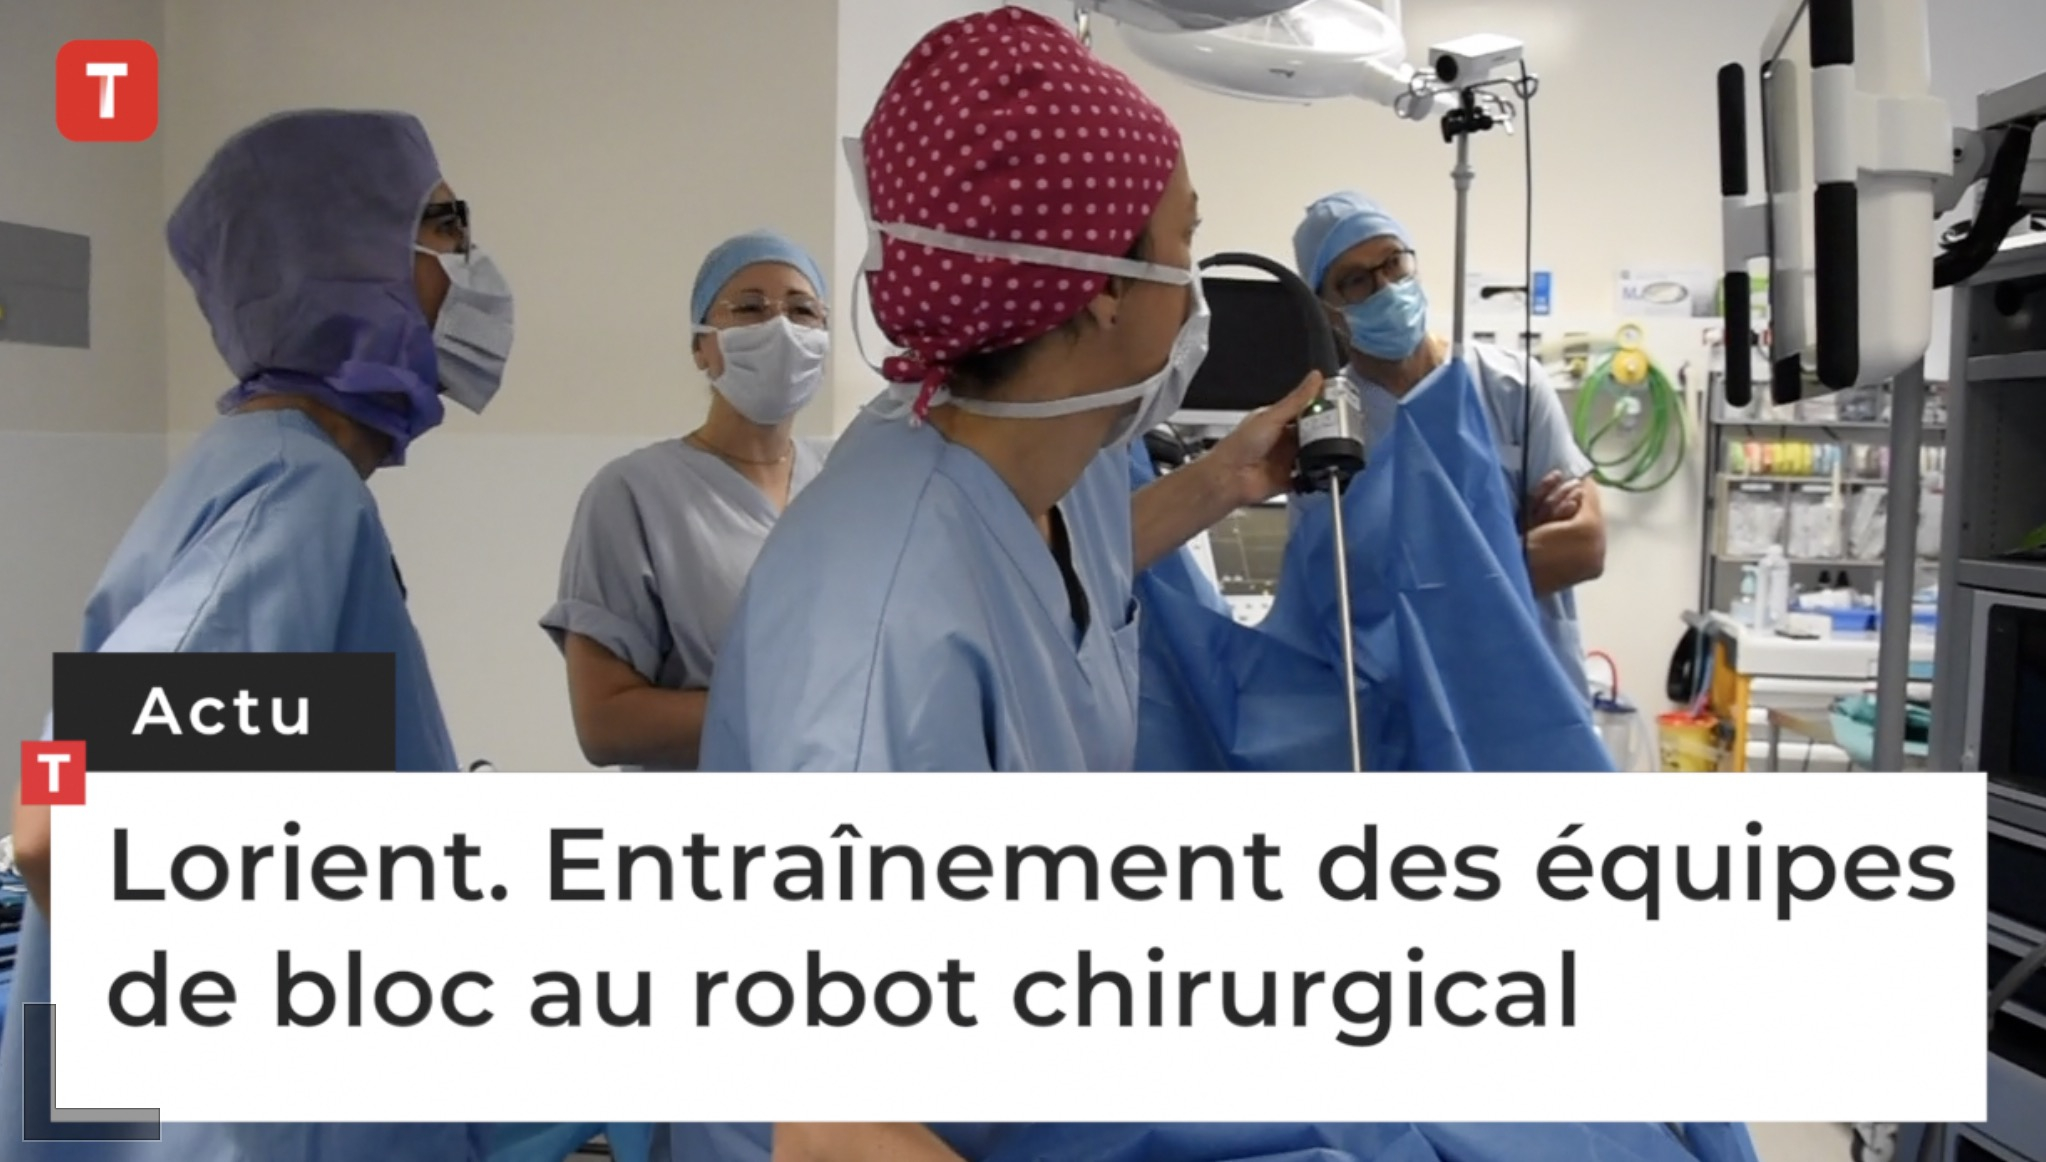 Lorient. Entraînement des équipes de bloc au robot chirurgical (Le Télégramme)